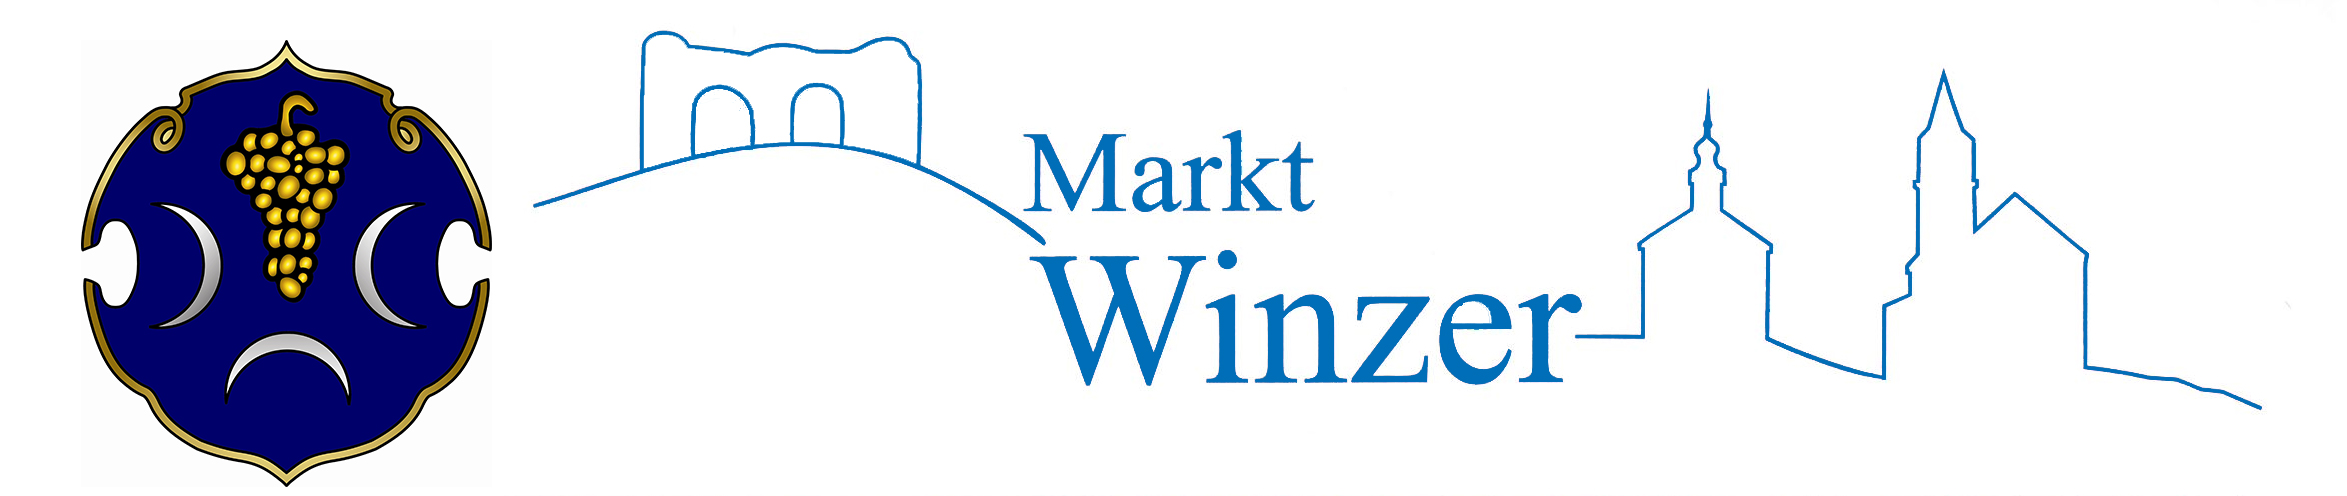 Markt Winzer